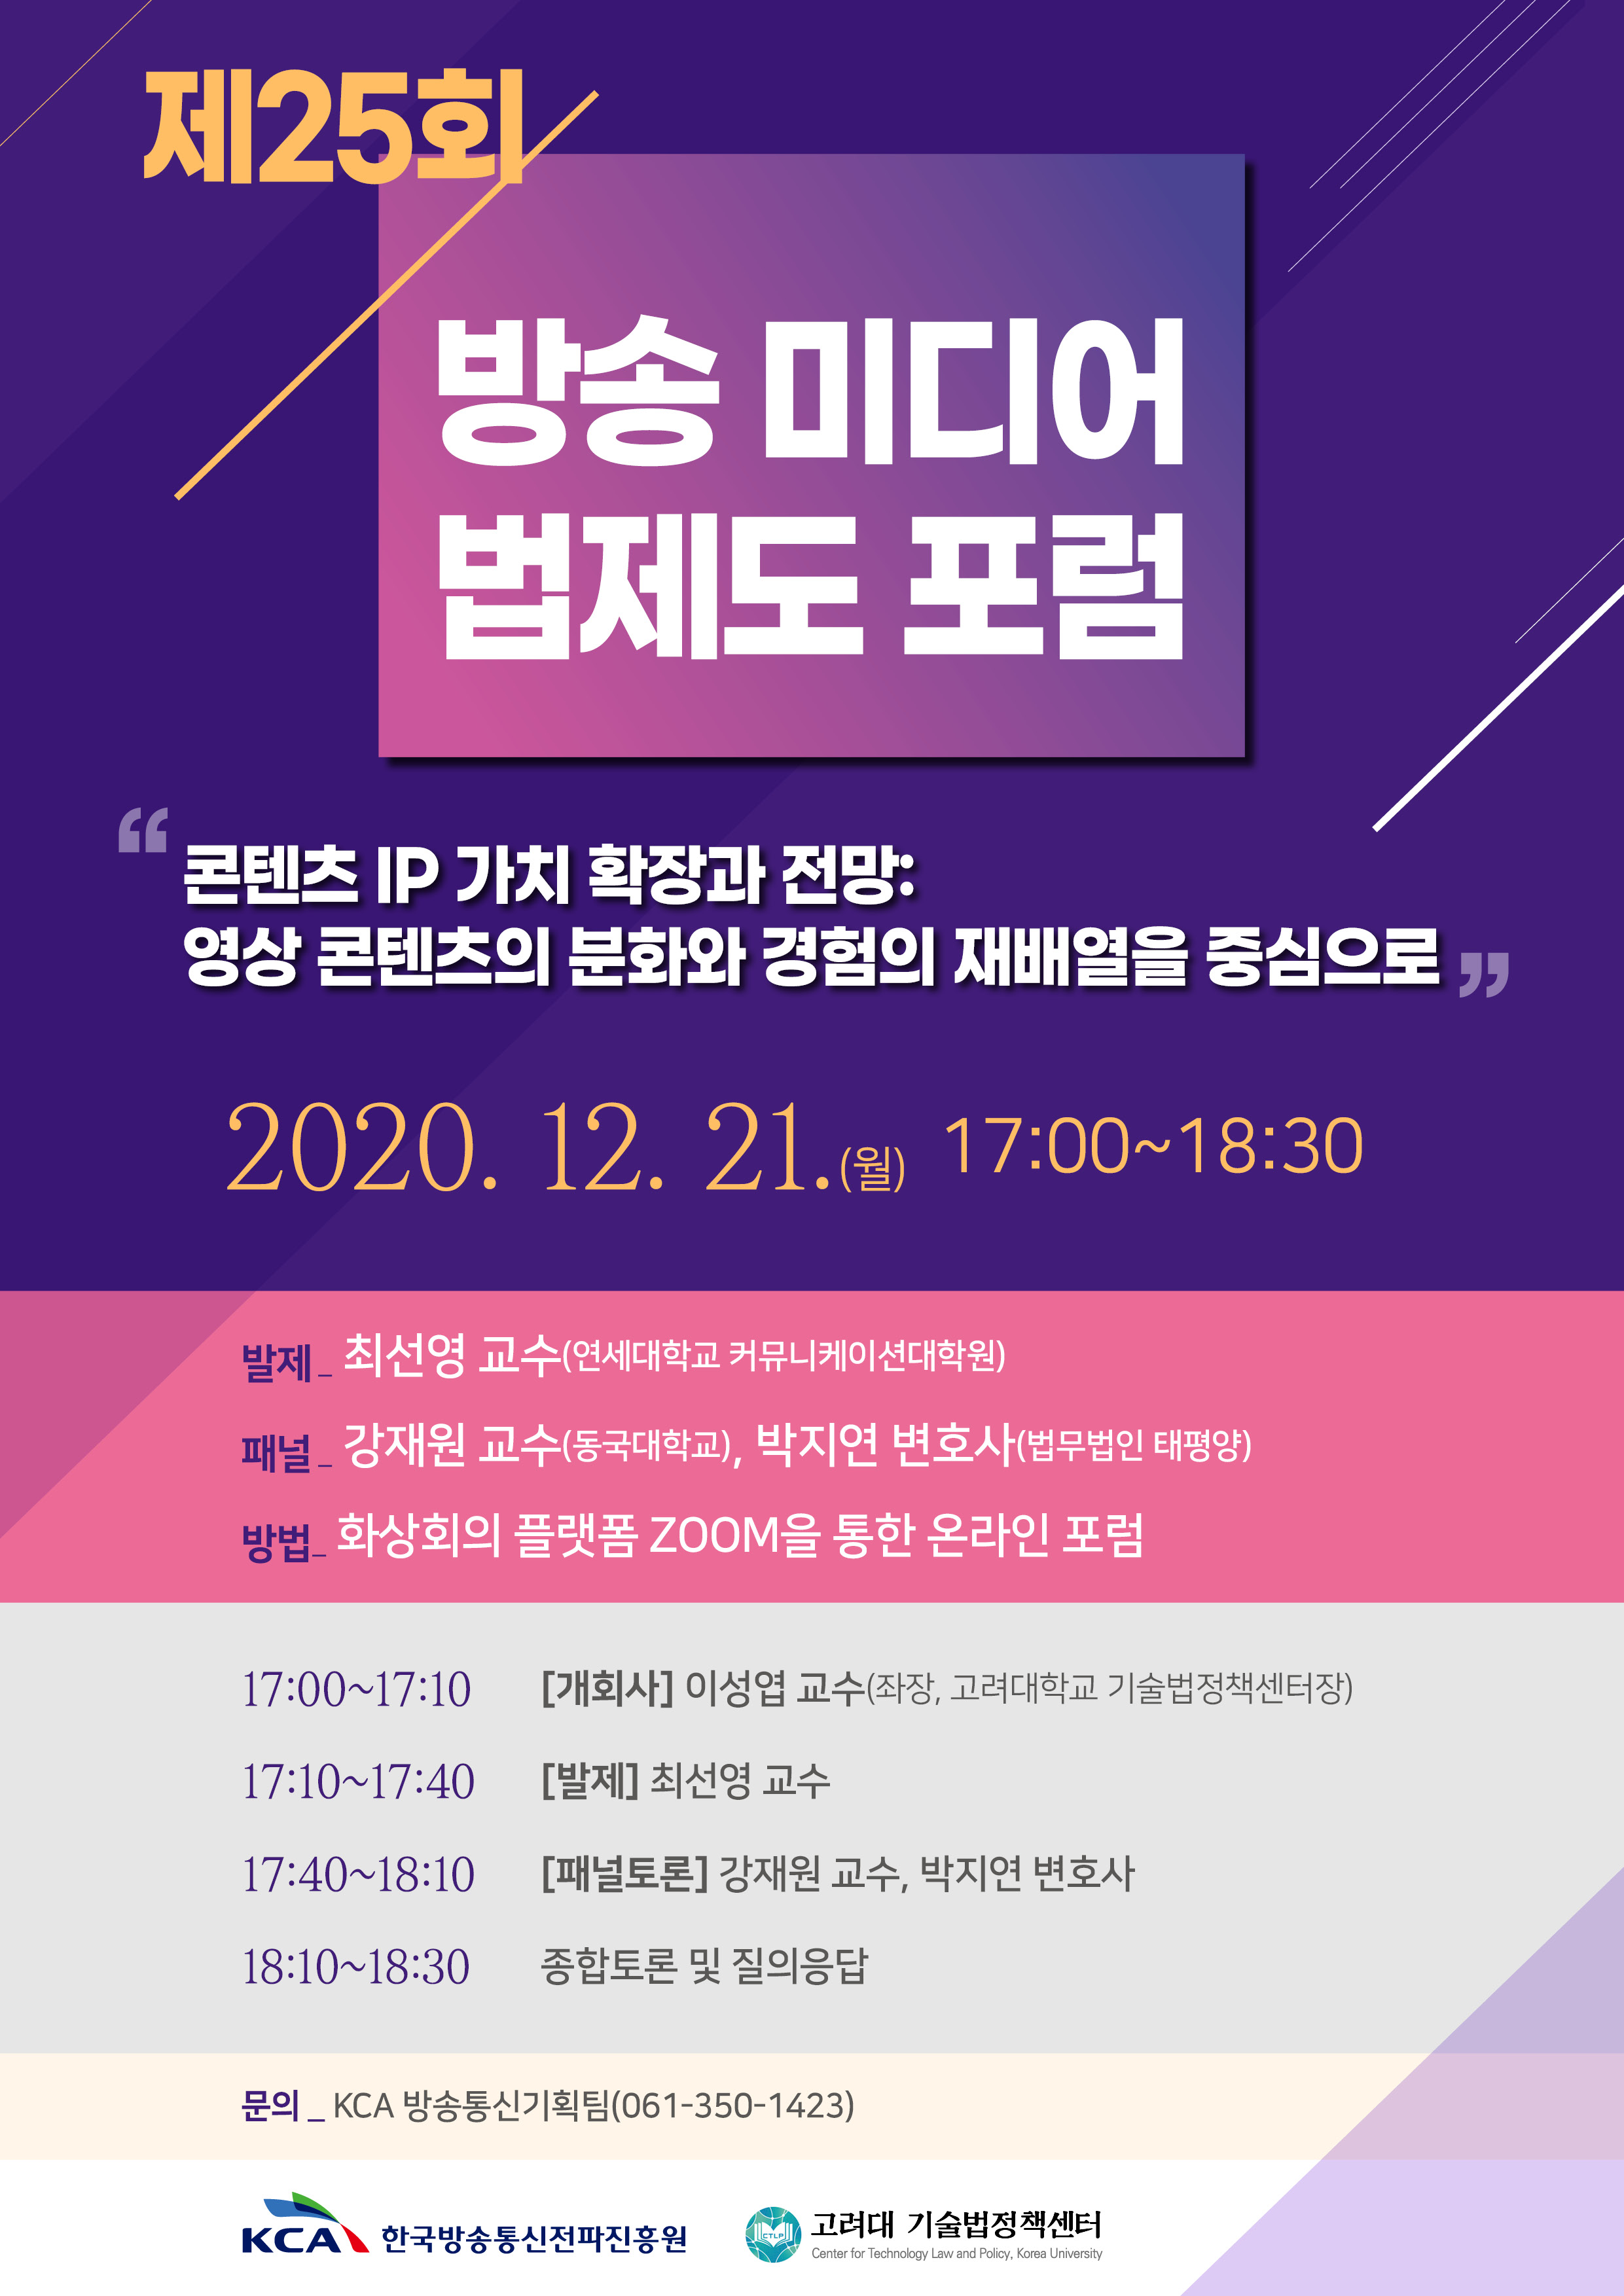 KCA 제25회 방송미디어 법제도 포럼 세미나 개최